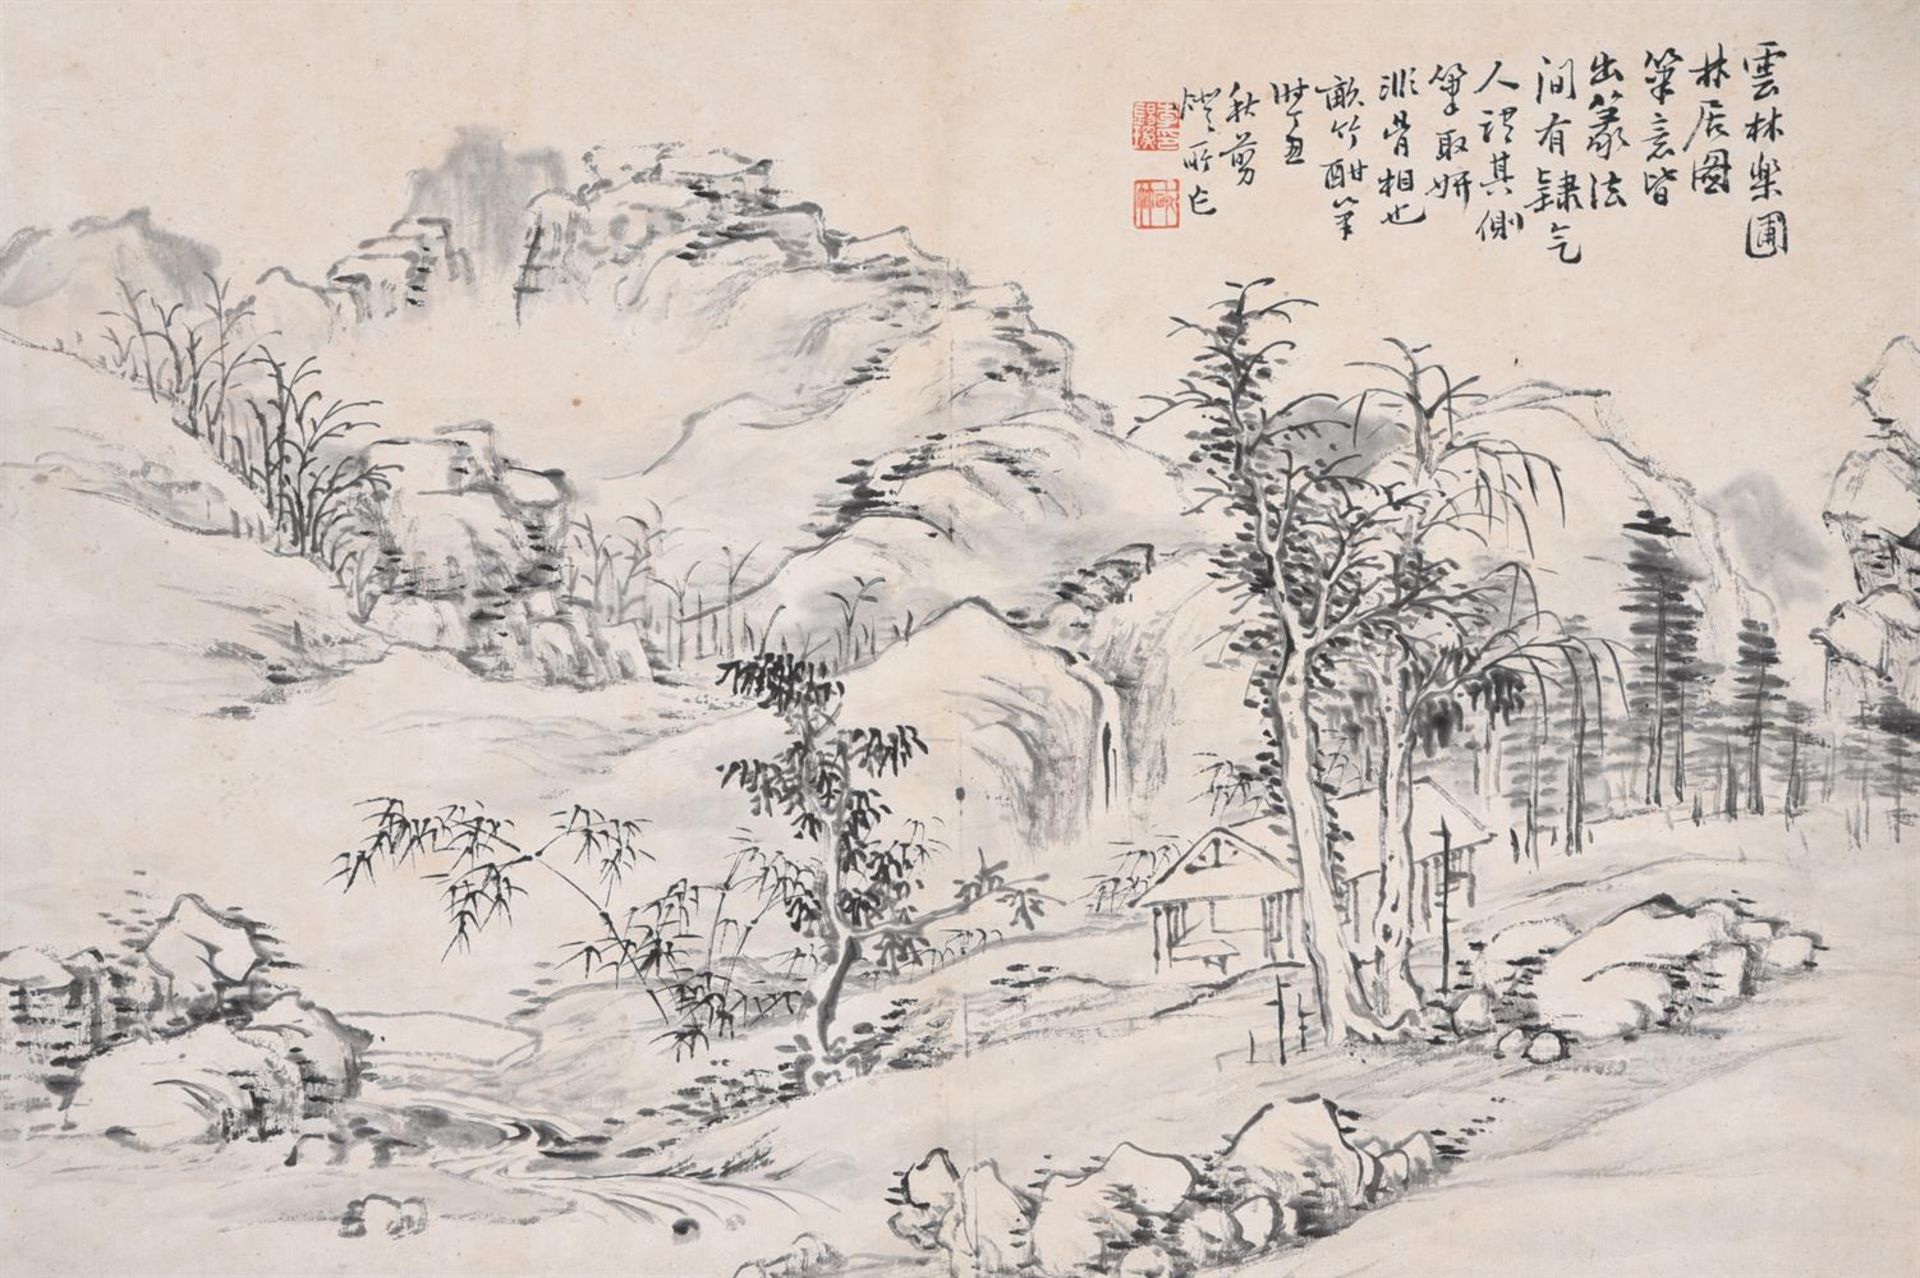 Li Xiyan (Qing Dynasty)